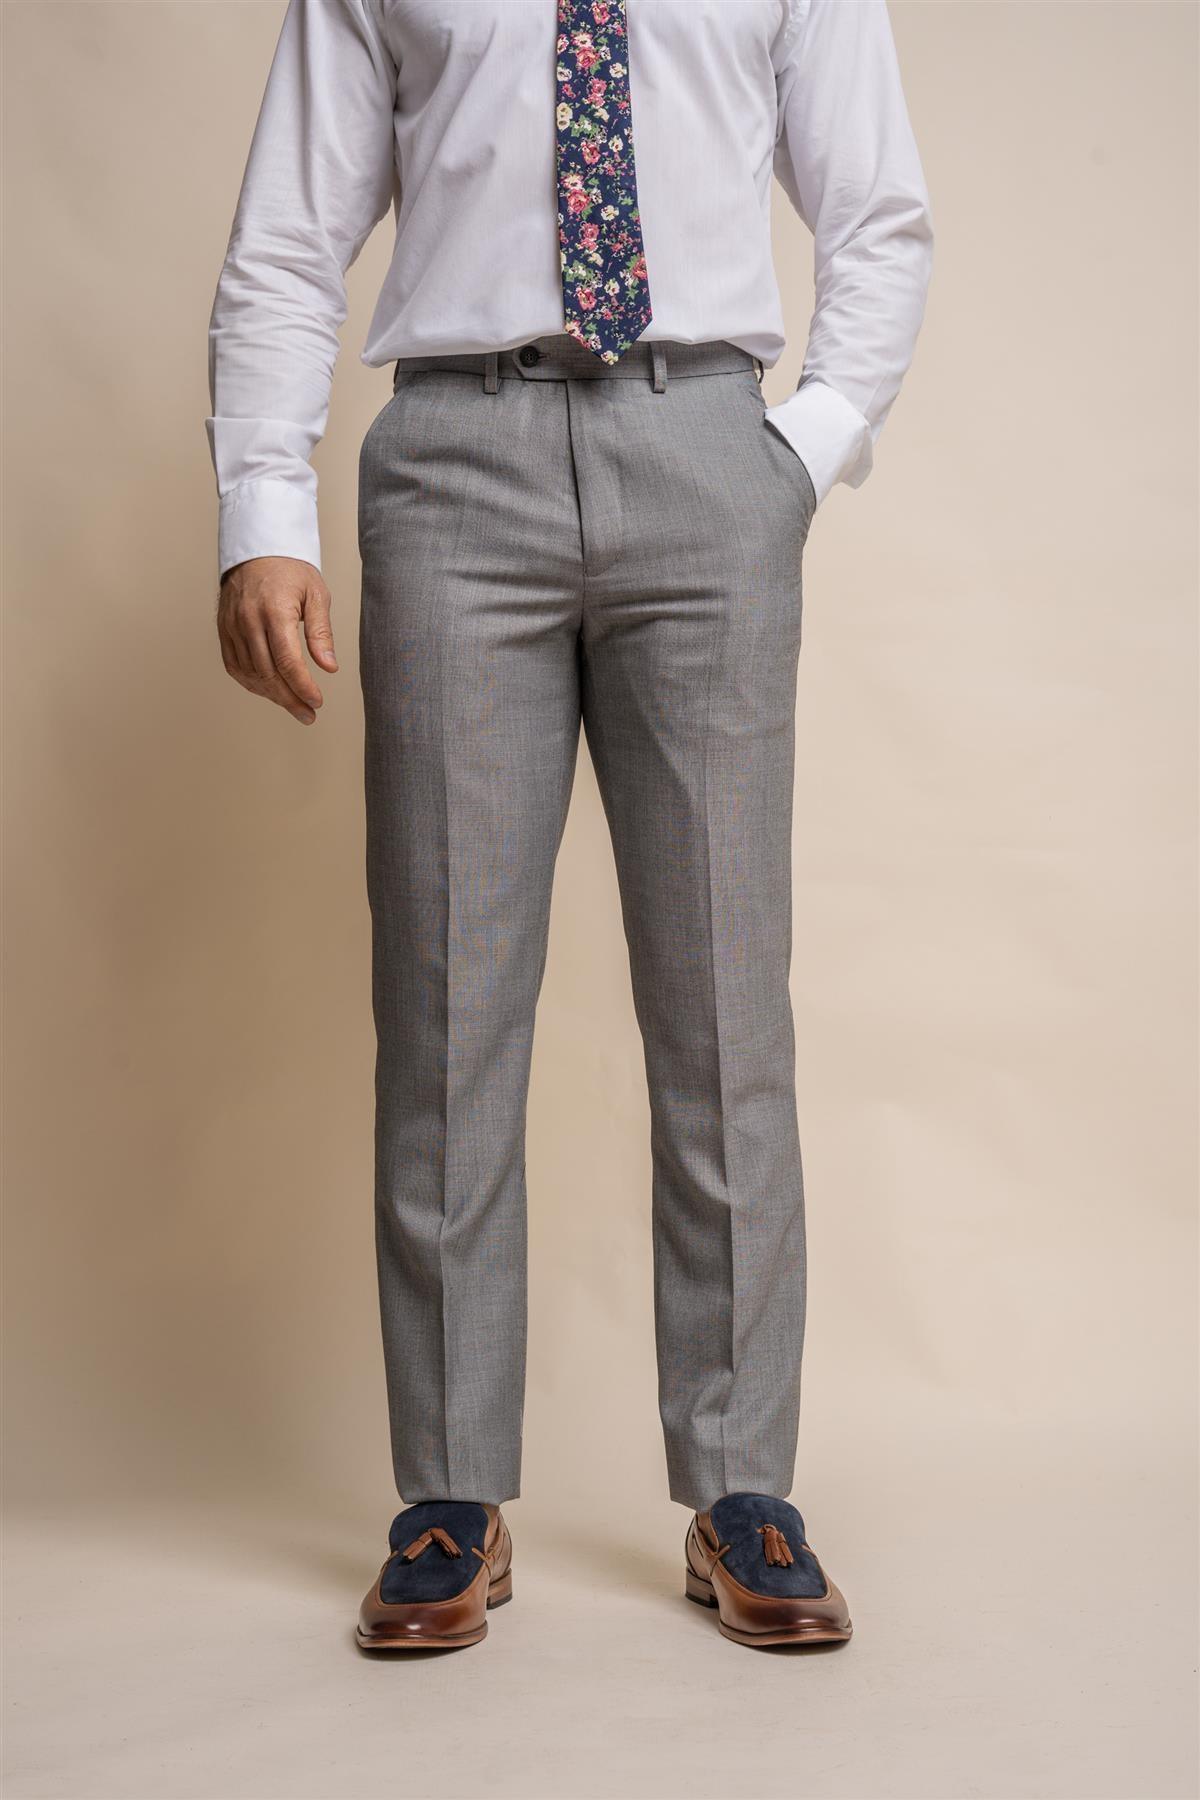 Reegan grey trouser front